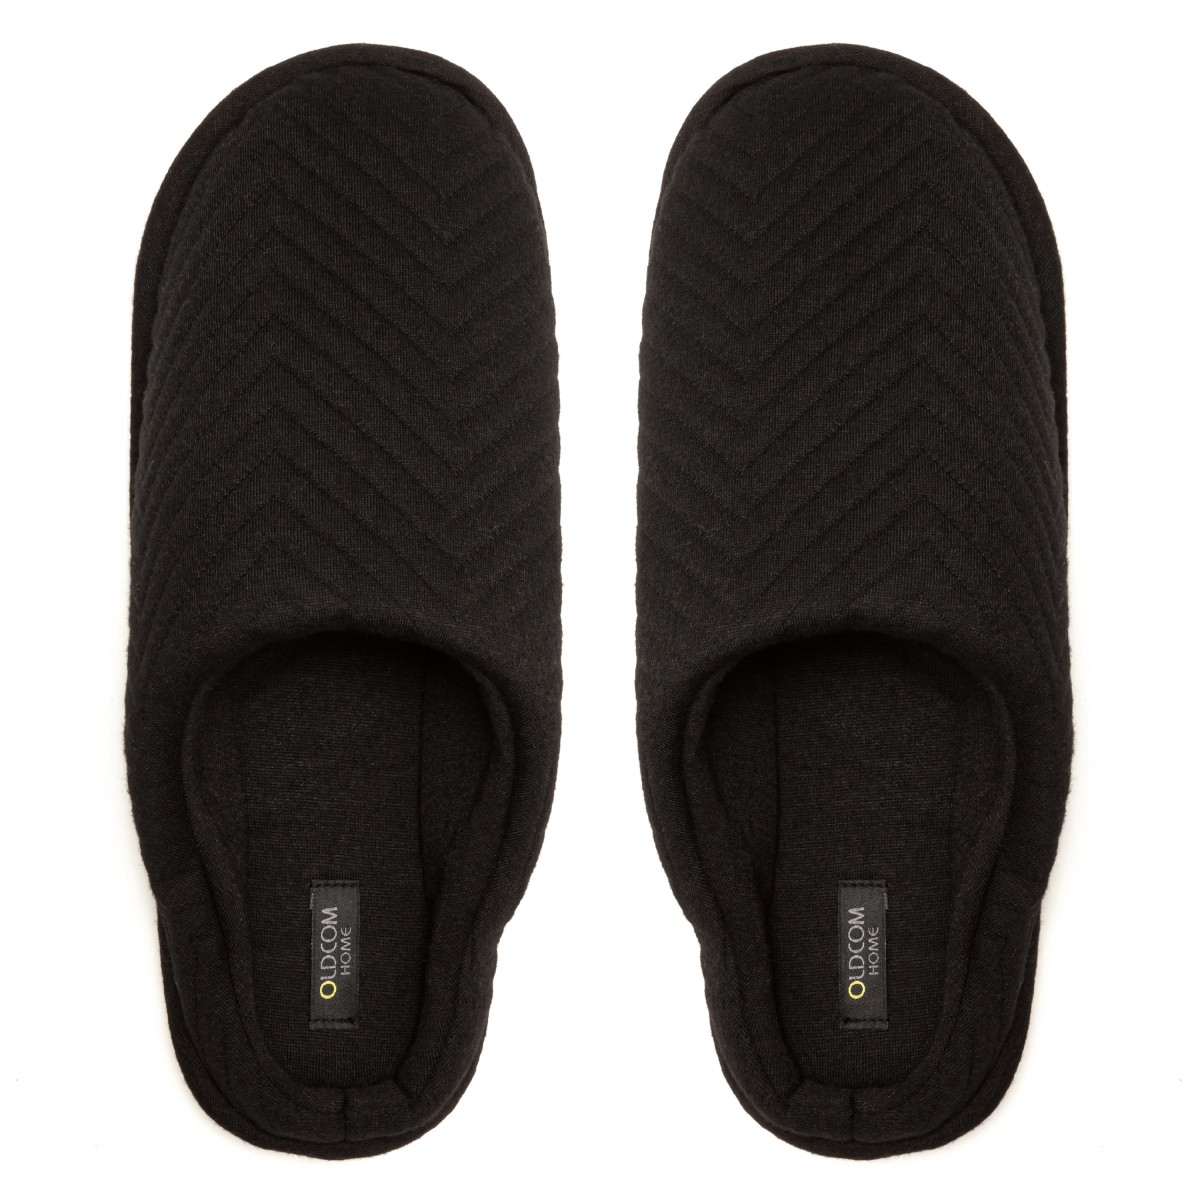 Men's Home slippers FAMILY, Black